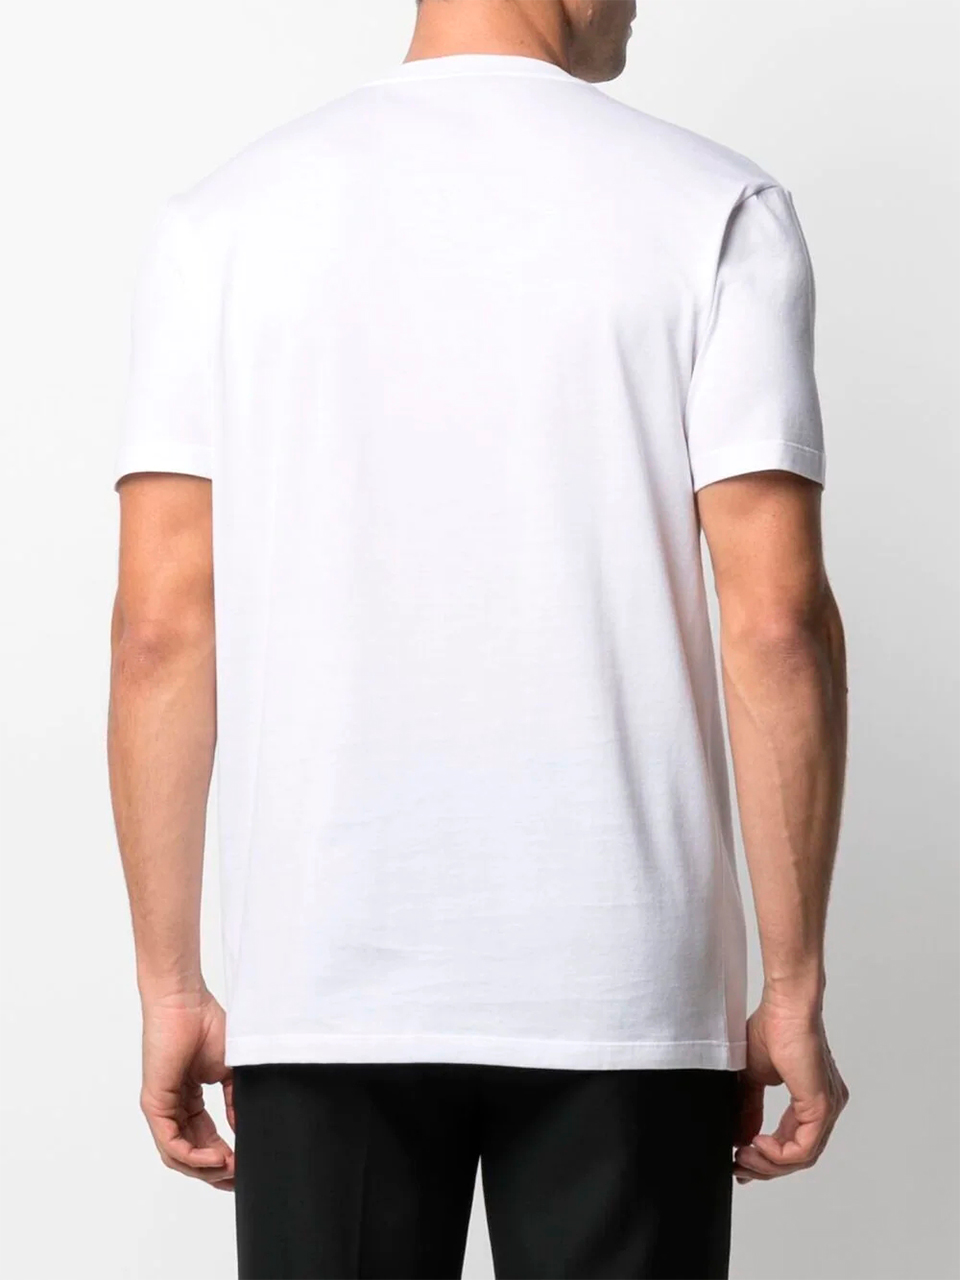 Imagem de: Camiseta Versace Branca com Estampa Medusa